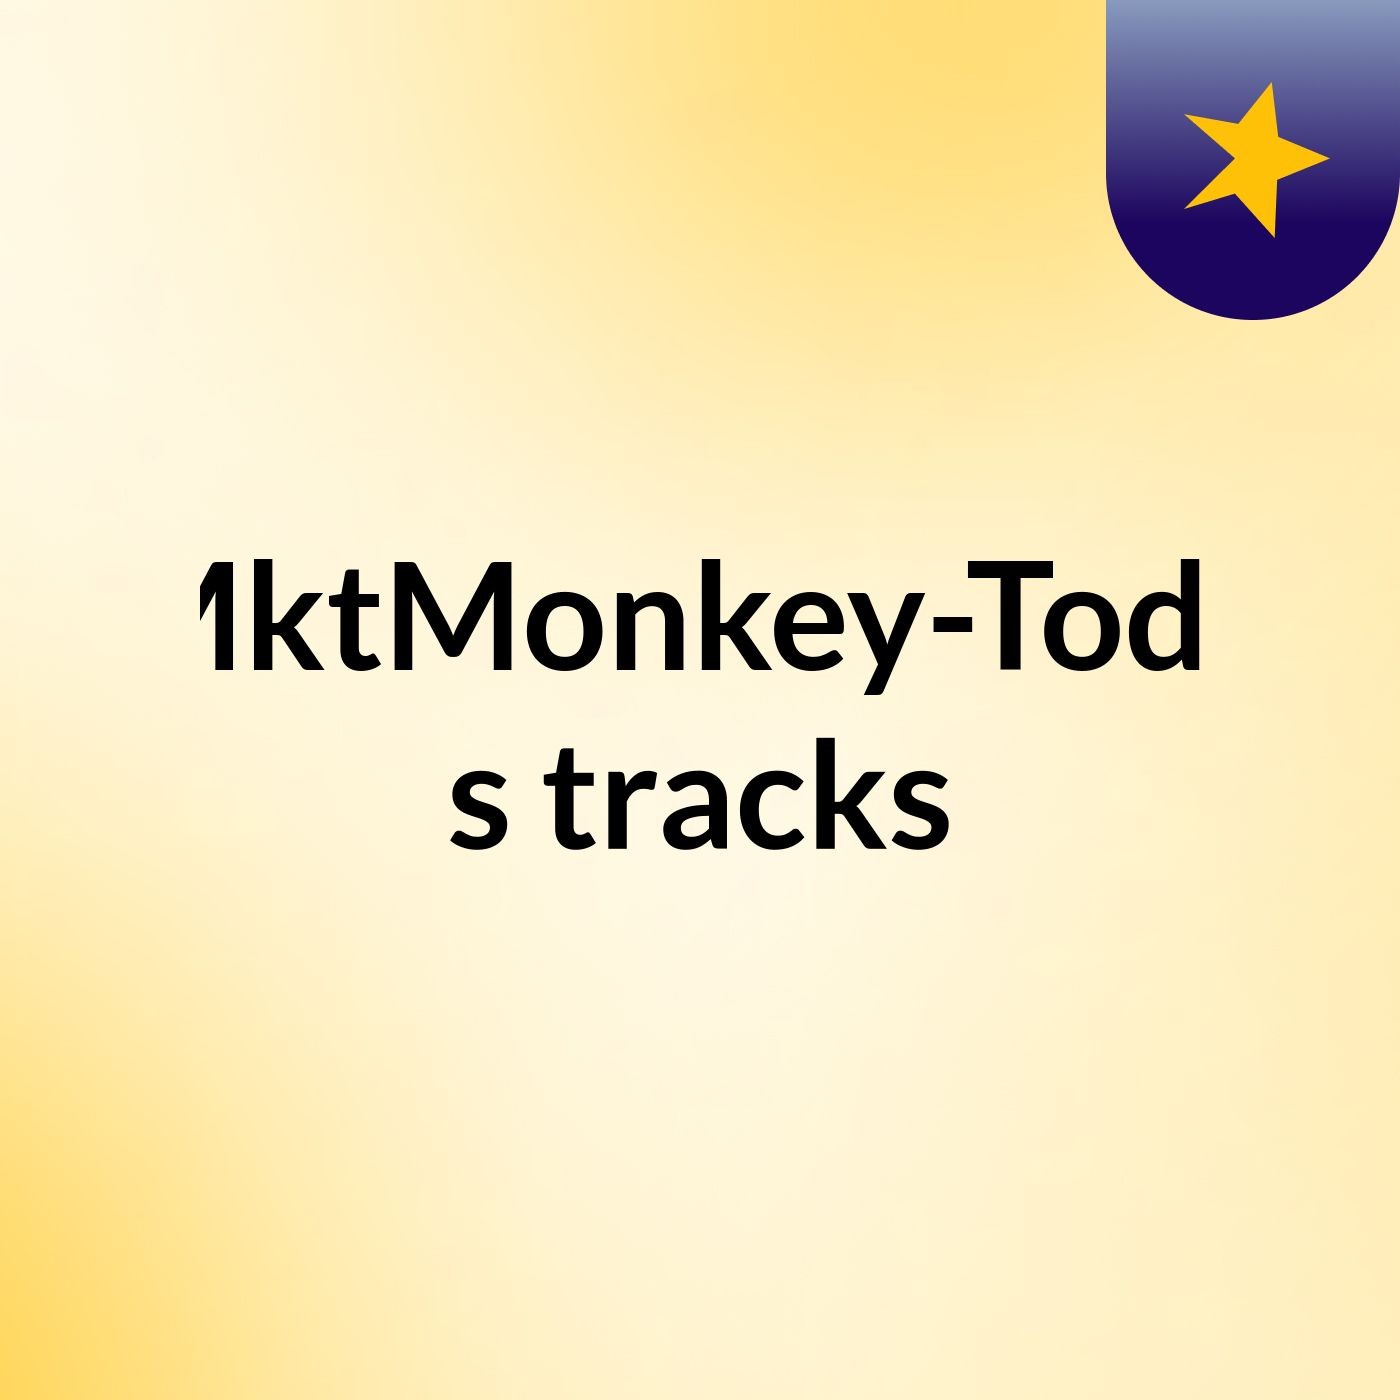 FreeMktMonkey-ToddCast's tracks